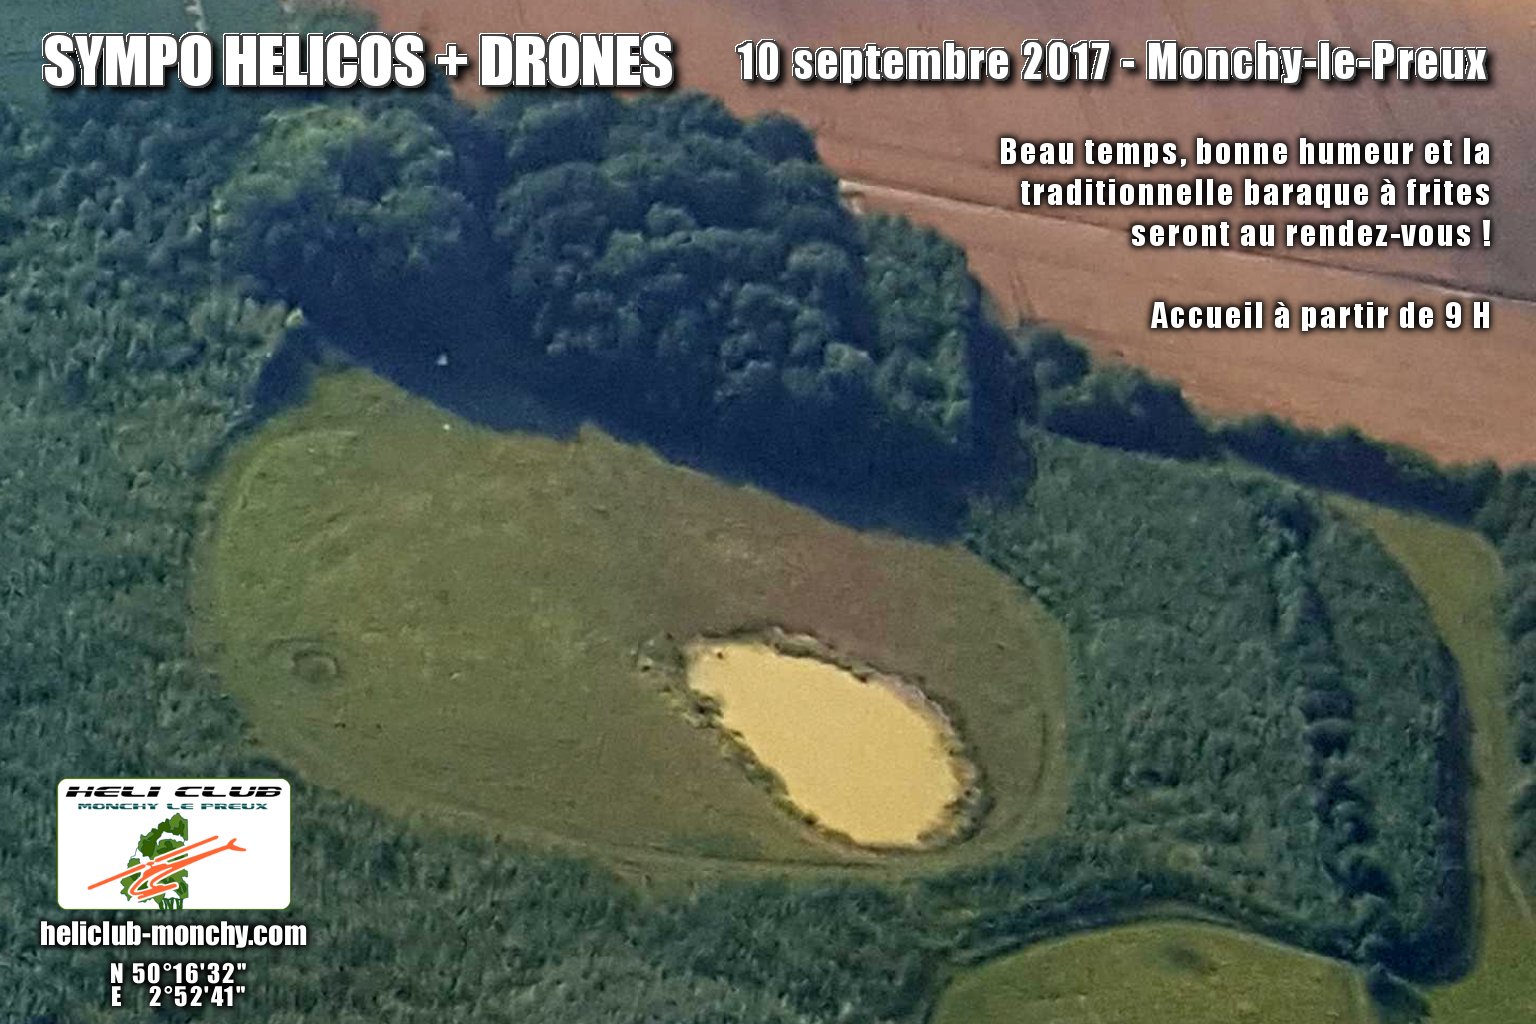 SYMPO HELICOS + DRONES - MONCHY-LE-PREUX (62) - 10 SEPTEMBRE 2017